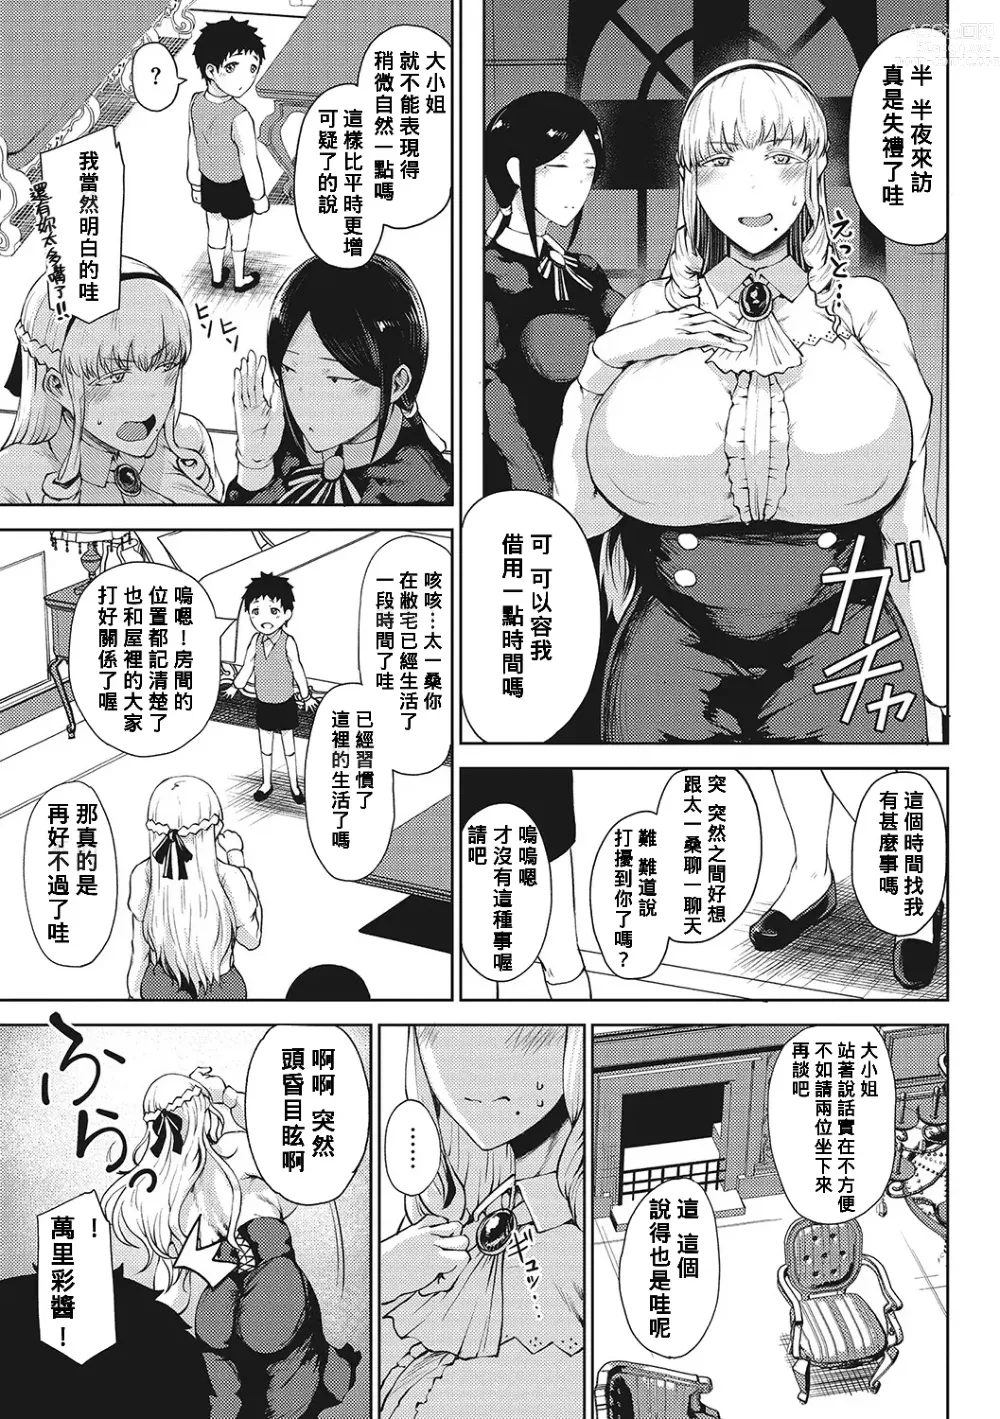 Page 7 of manga Saitan no Yakusoku Zenpen